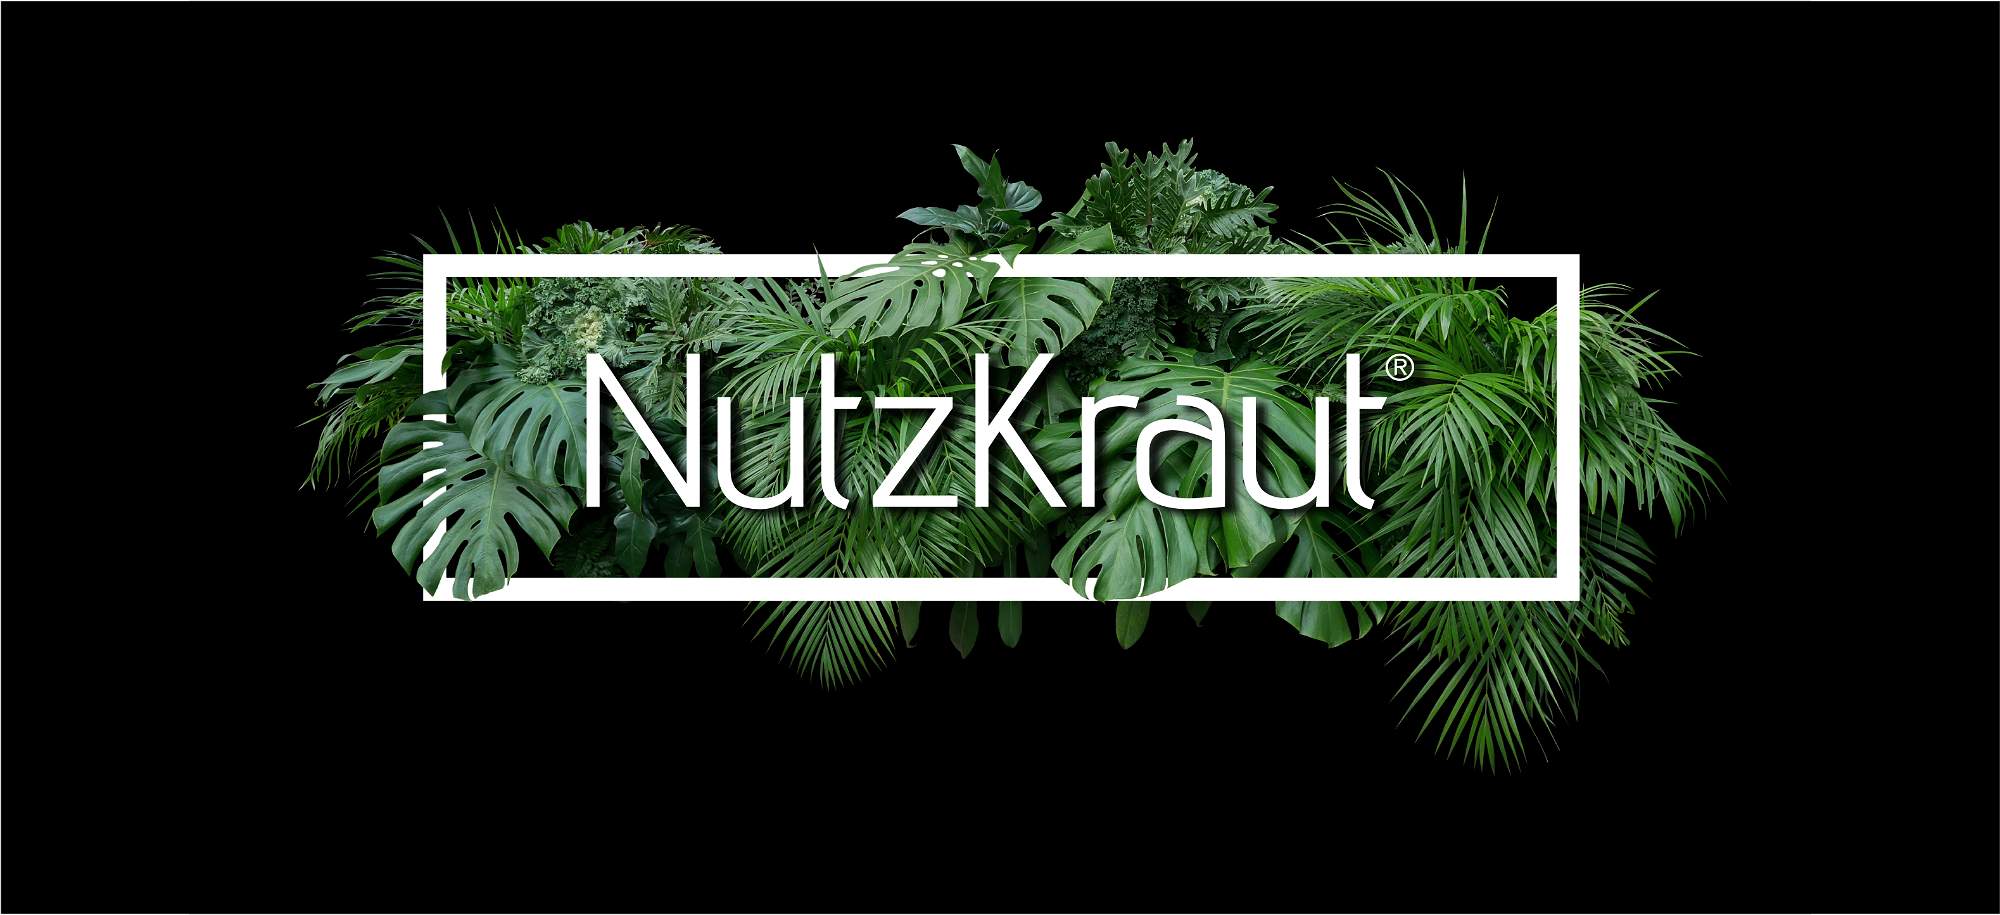 NutzKraut